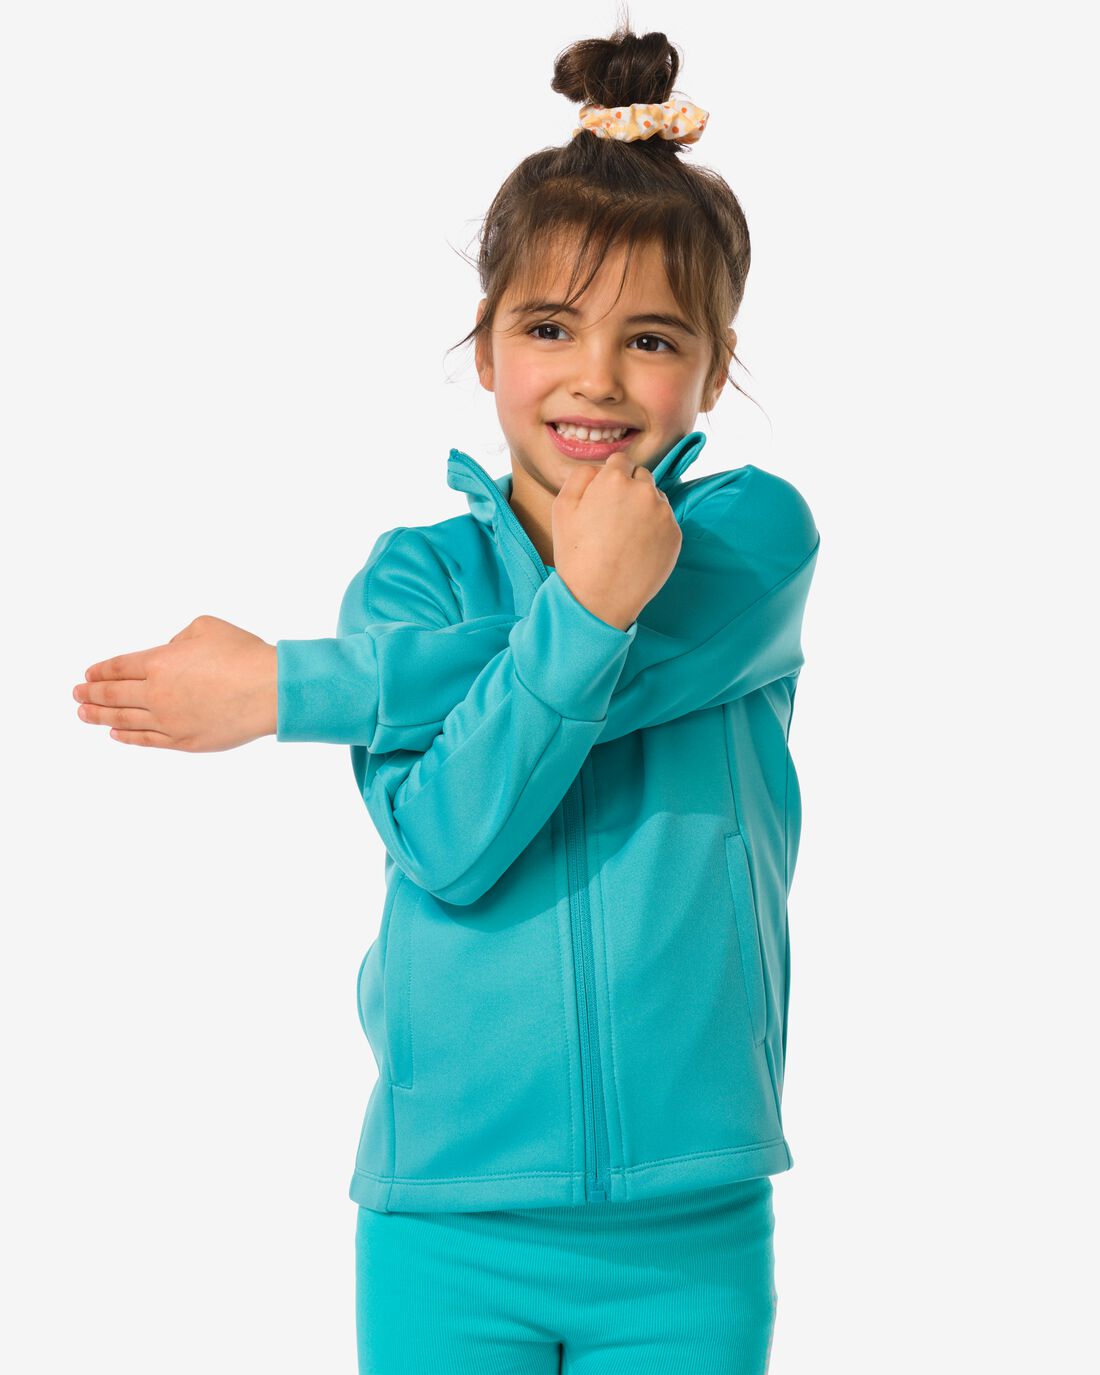 HEMA Kinder Trainingsjack Turquoise (turquoise)